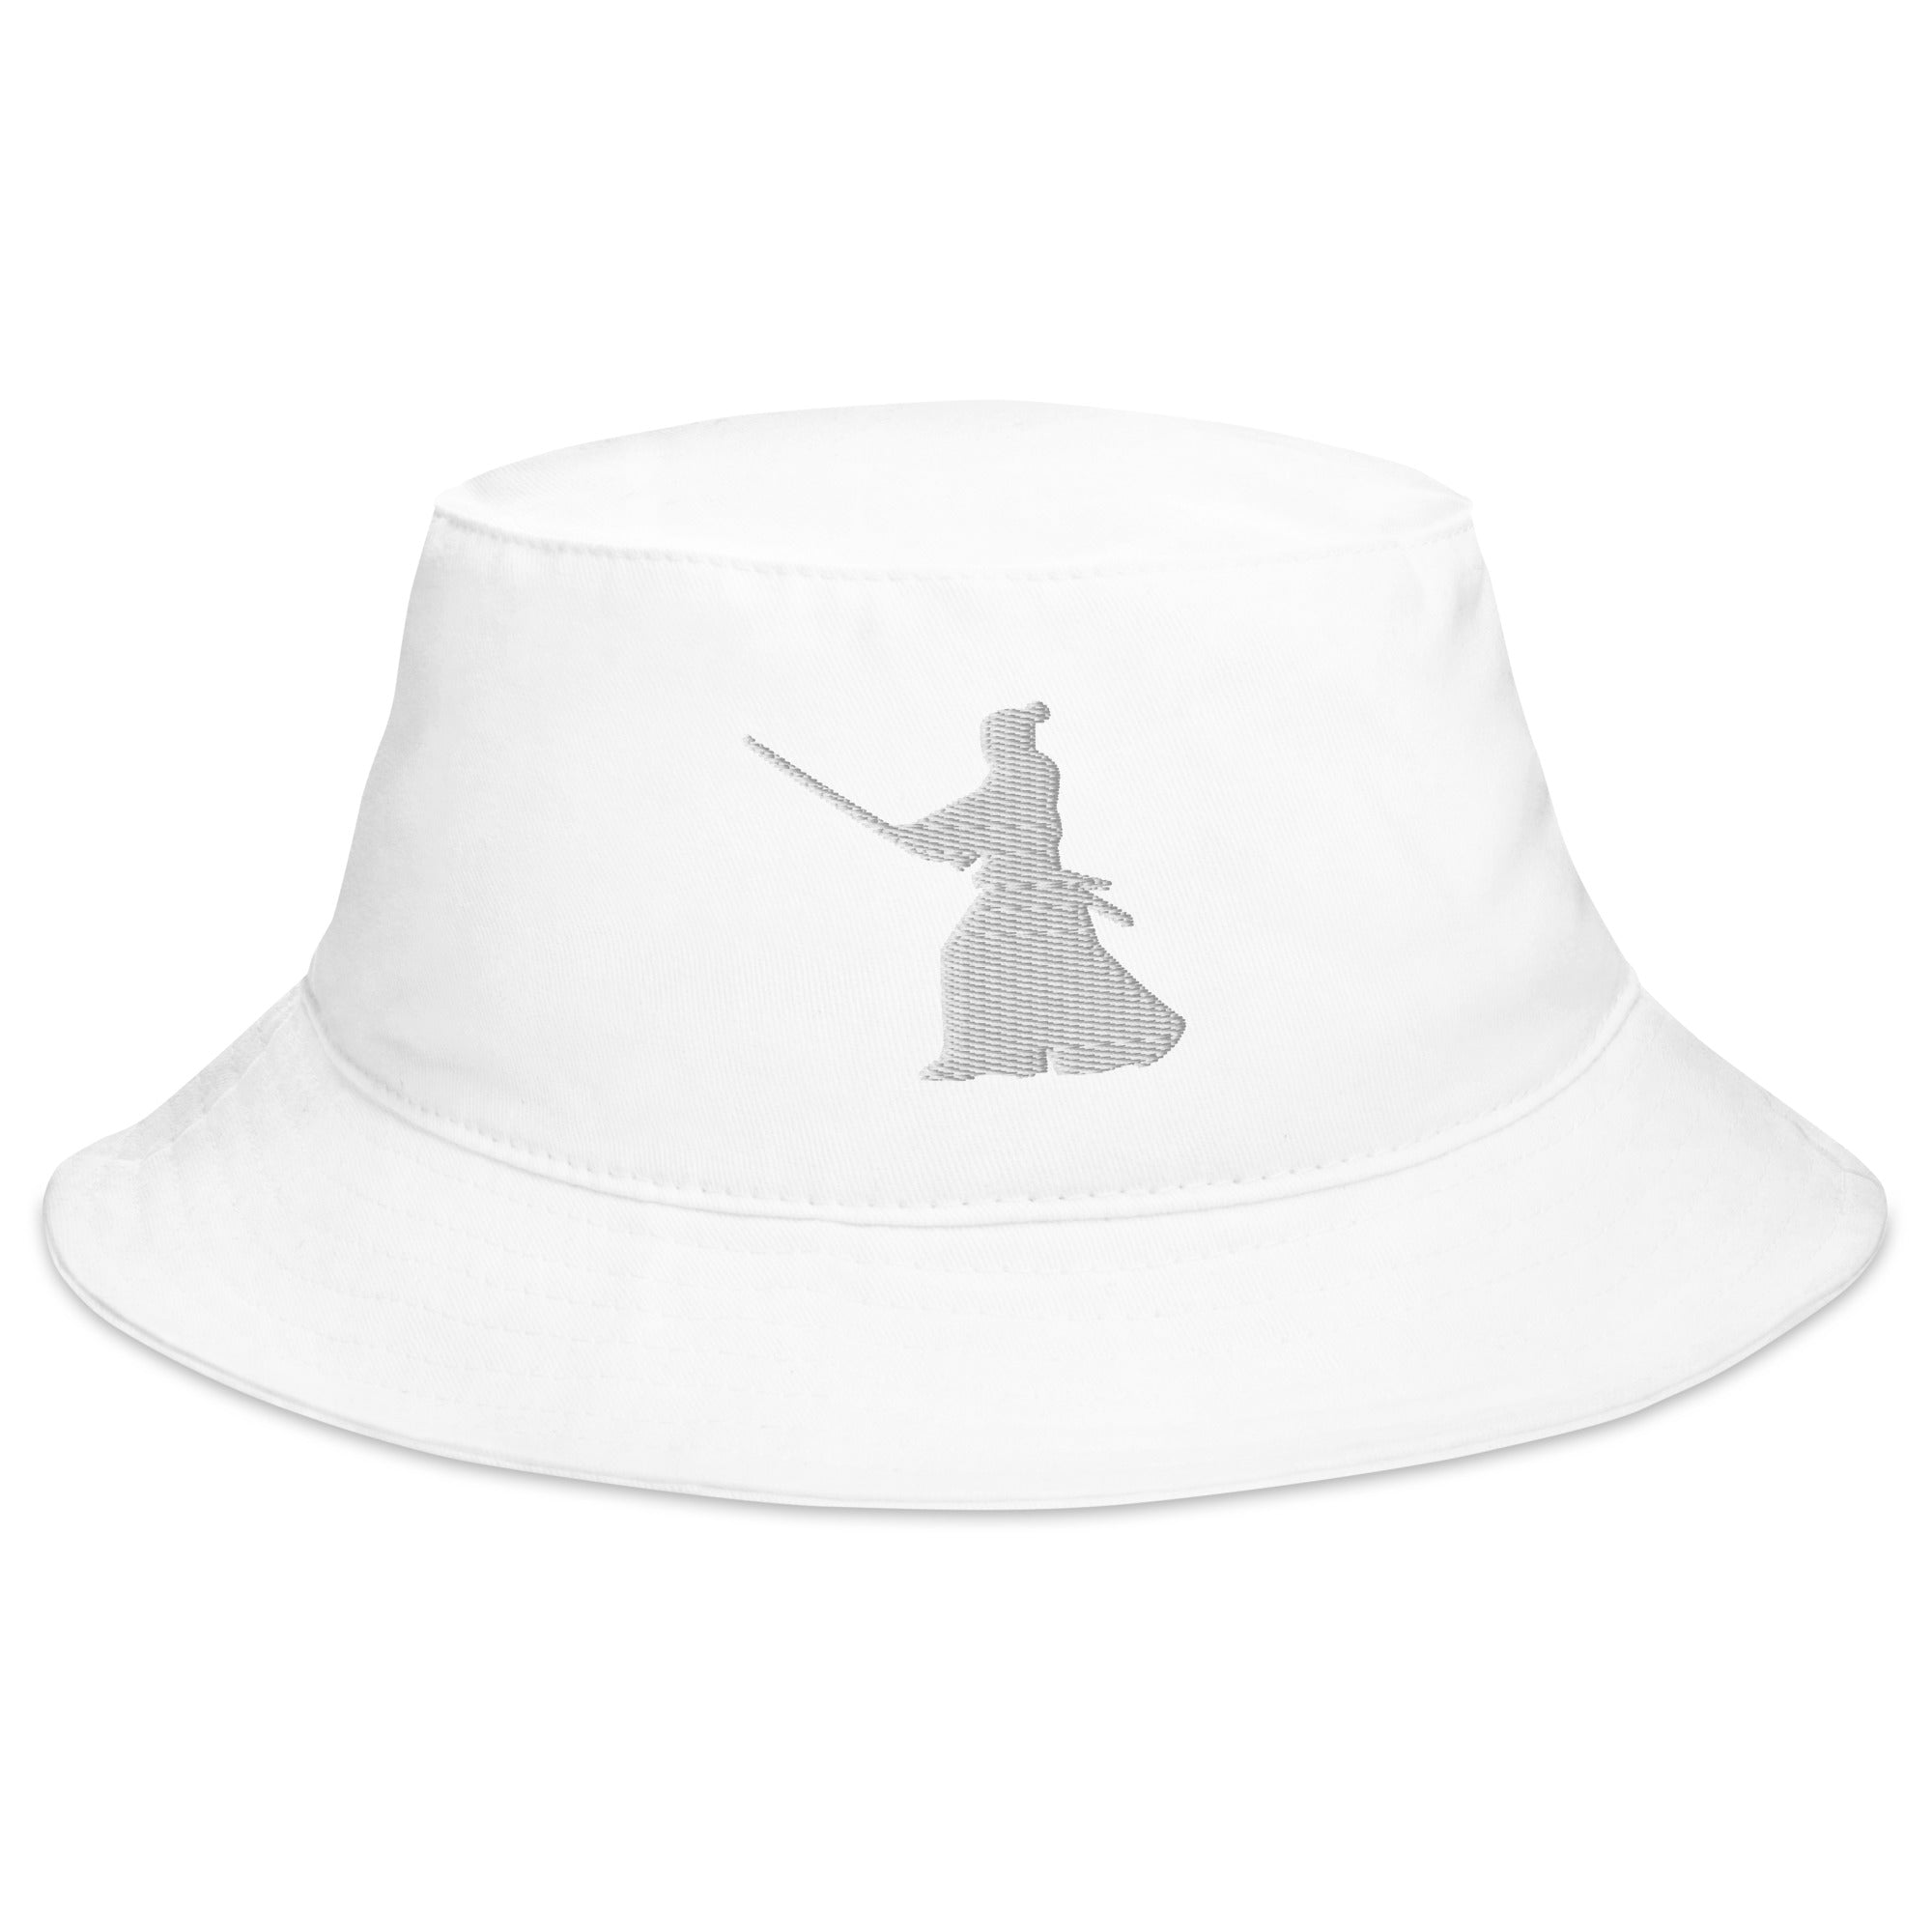 Ronin Samurai Warrior Swordsman Embroidered Bucket Hat Seigan No Kamae Stance